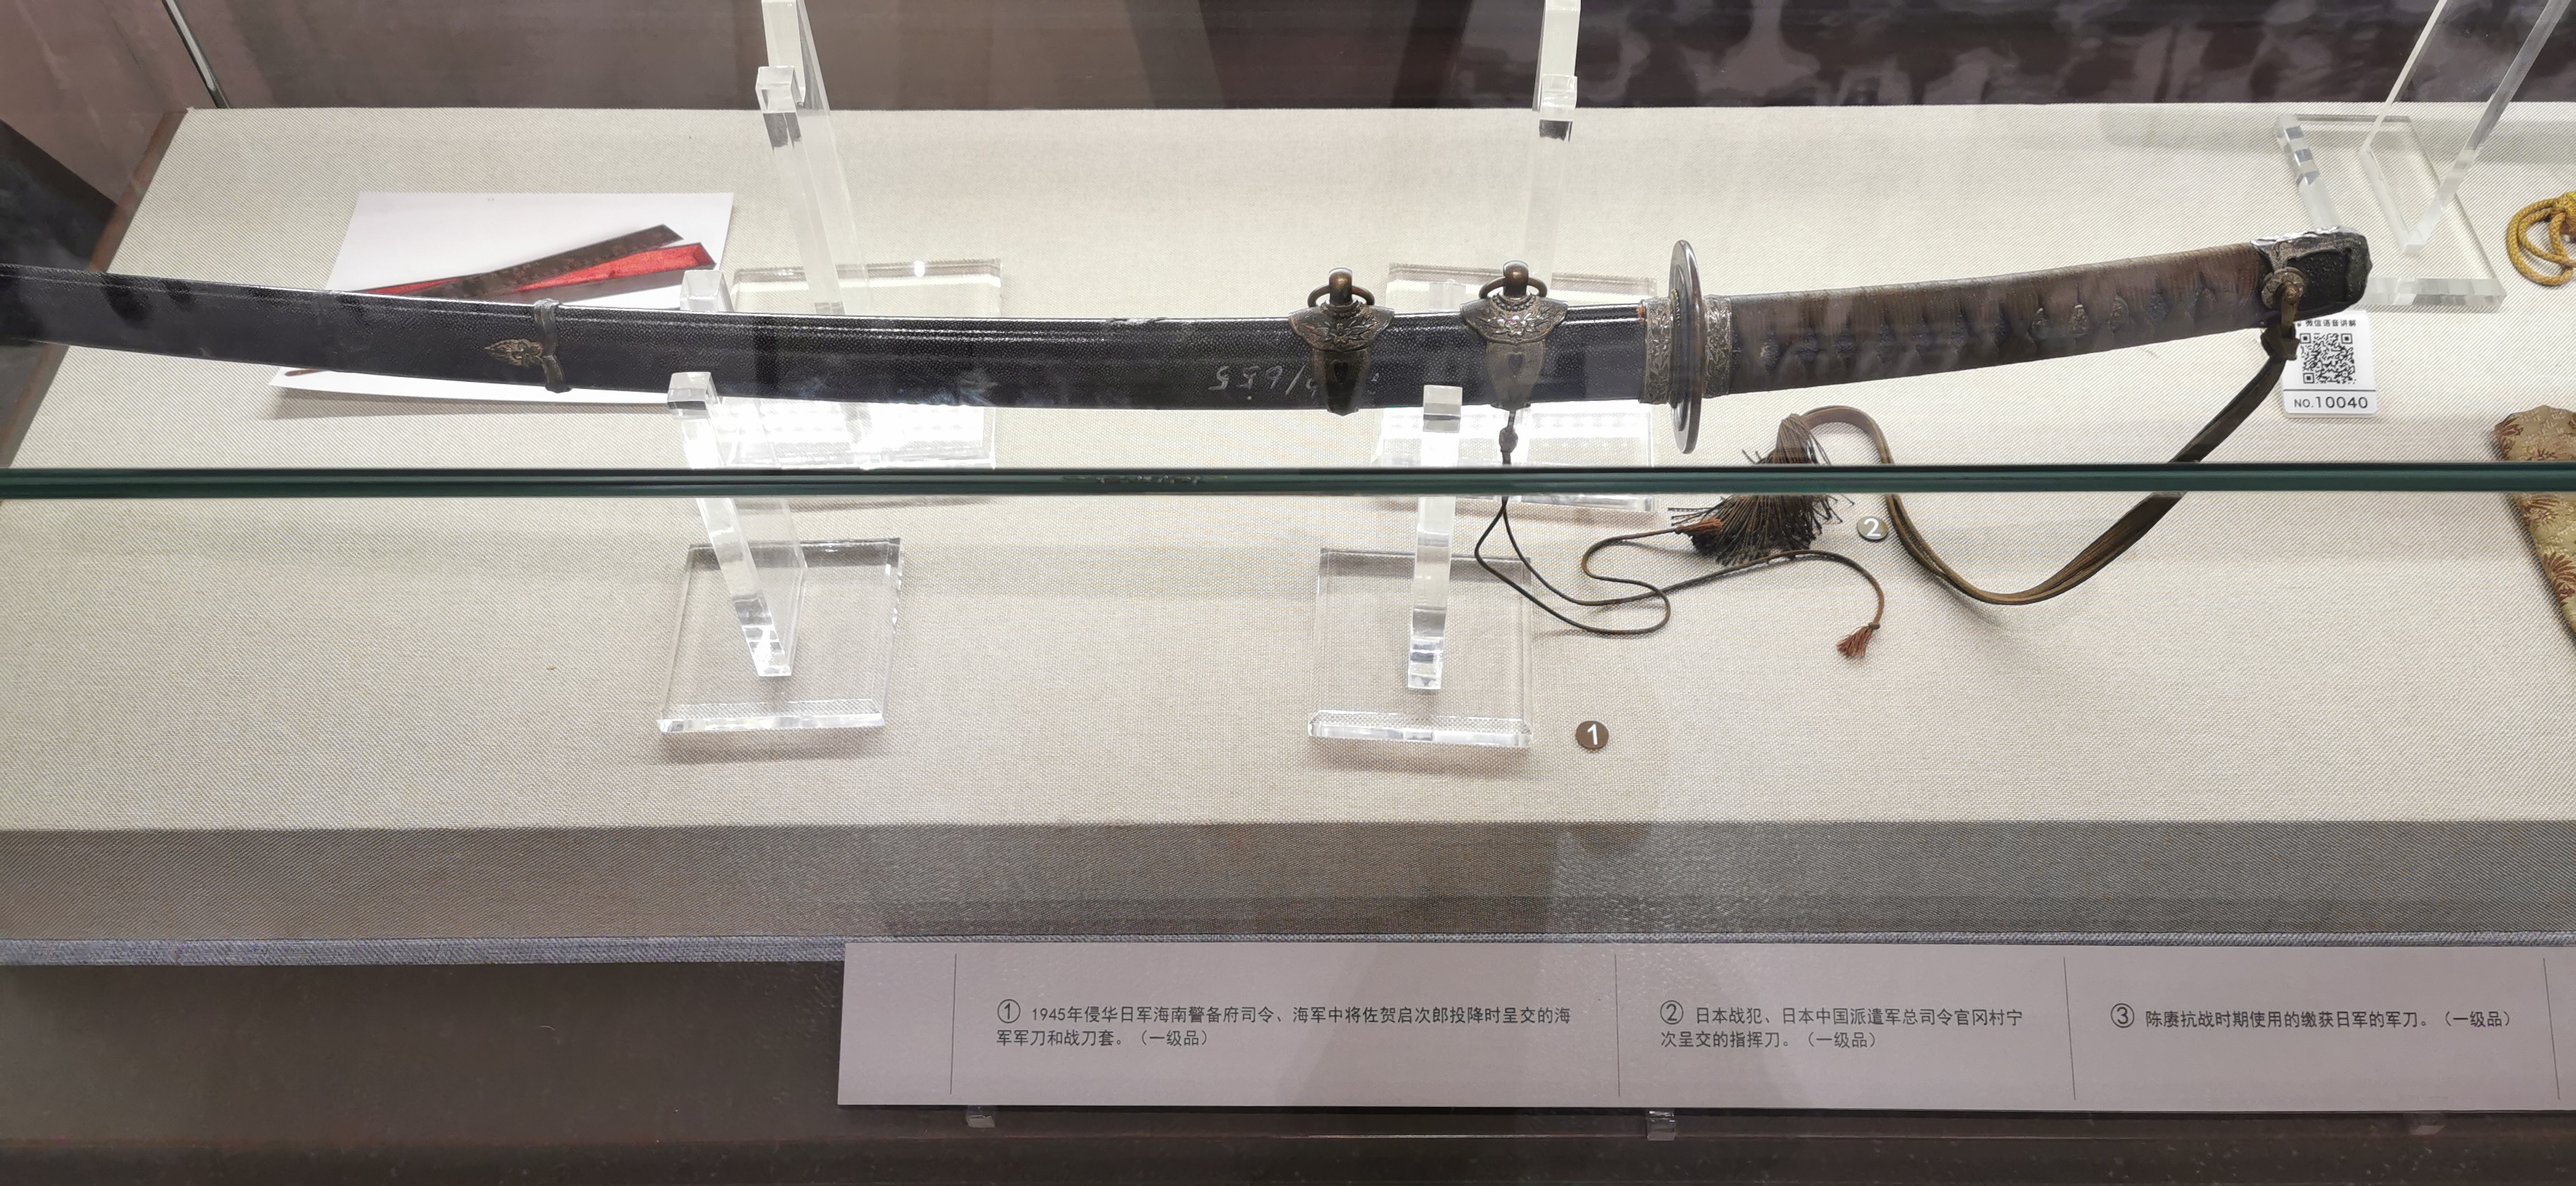 首都军事博物馆游记(重新编辑了一遍终于过审了)抗日胜利接收的军刀